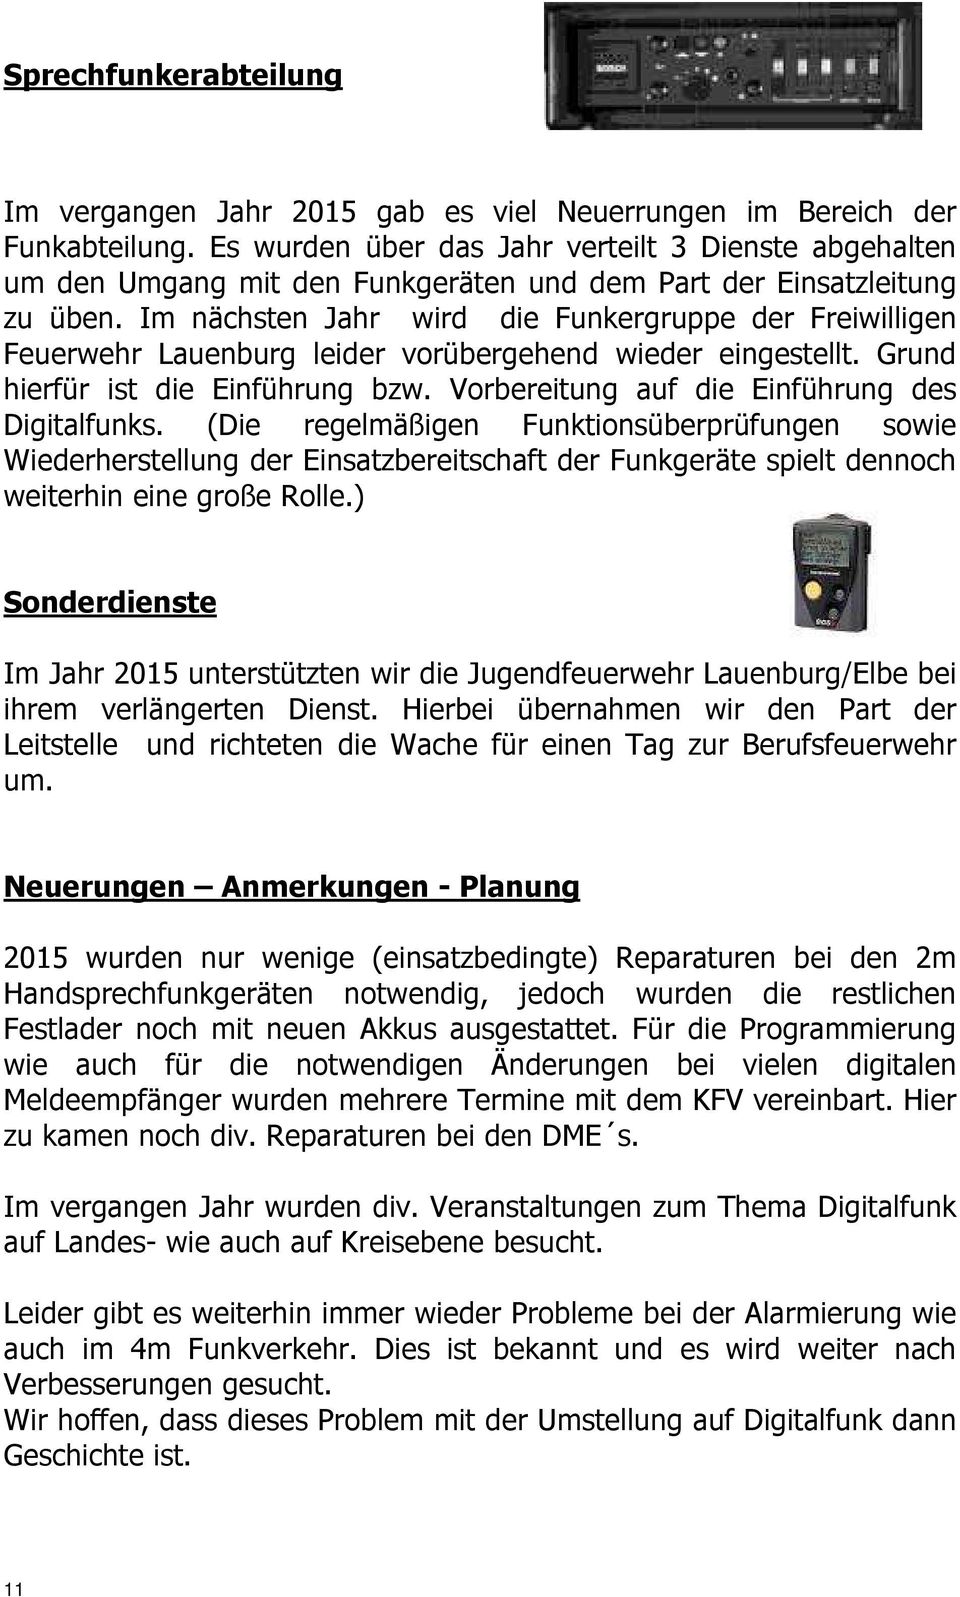 Im nächsten Jahr wird die Funkergruppe der Freiwilligen Feuerwehr Lauenburg leider vorübergehend wieder eingestellt. Grund hierfür ist die Einführung bzw.